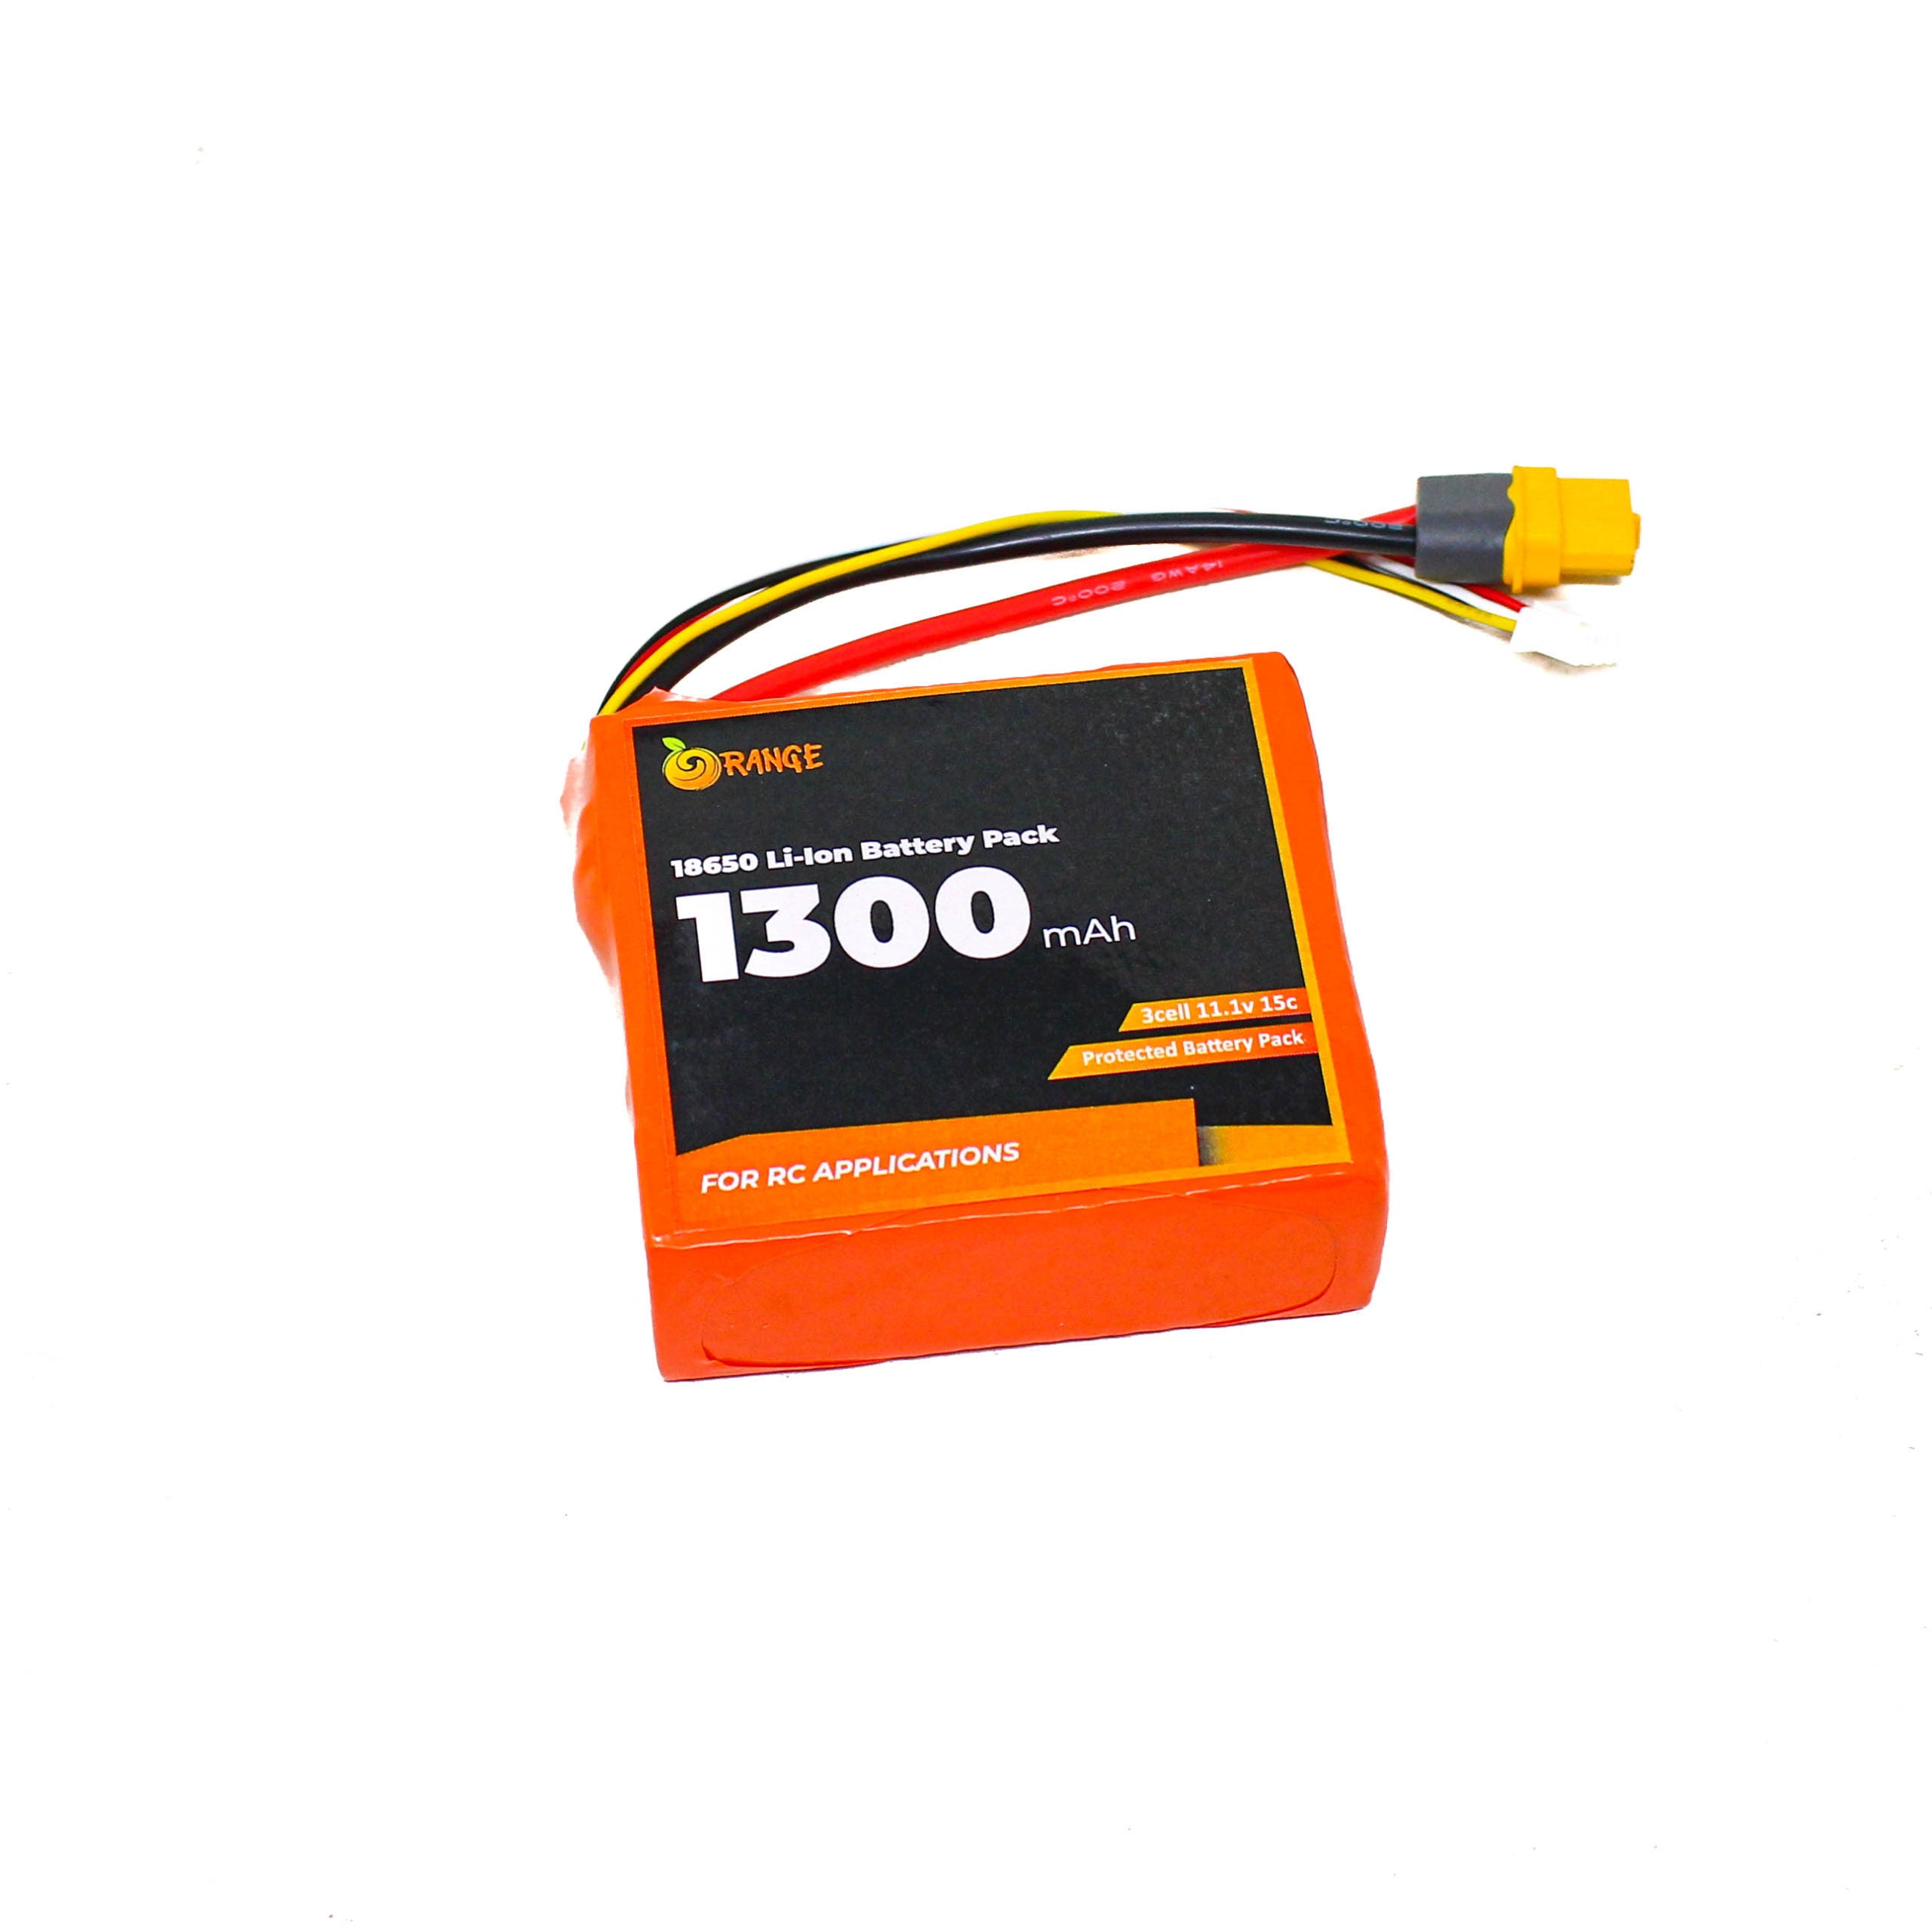 Orange ISR 18650 Li-ion 1300mAh 11.1v 3s1p Protected Battery Pack-8C